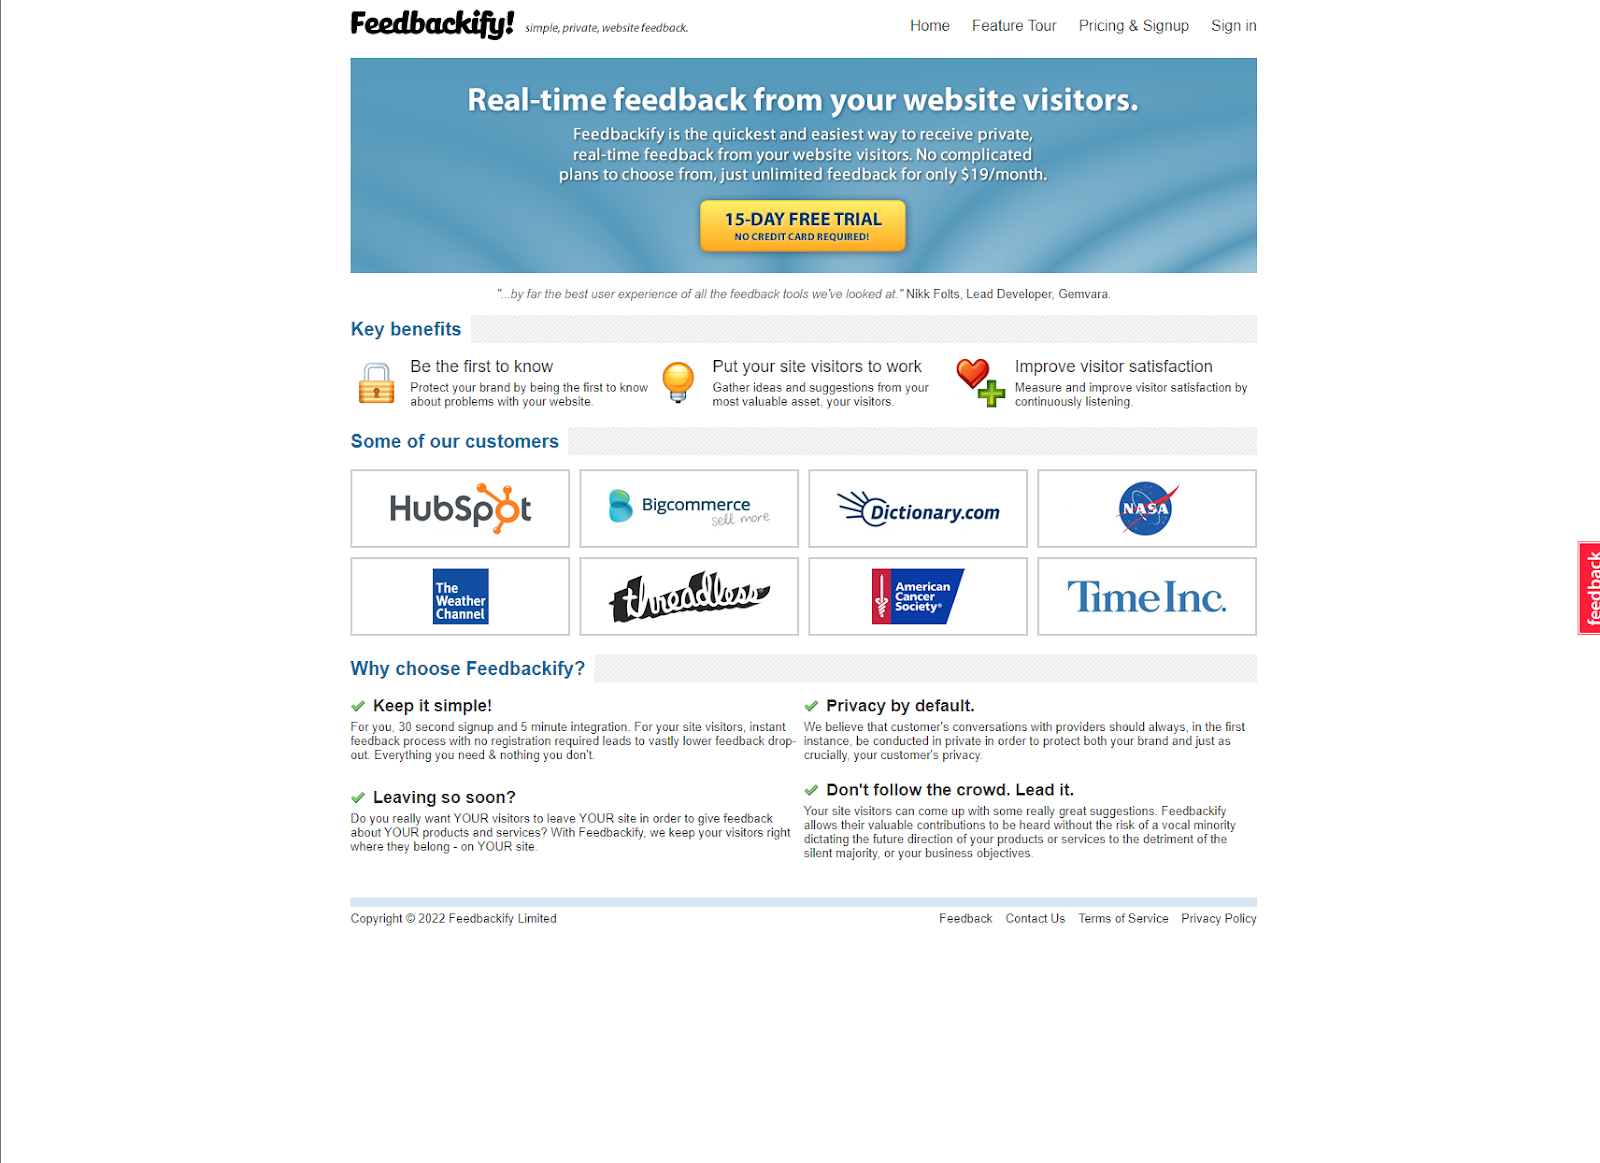 Customer feedback tools, Feedbackify